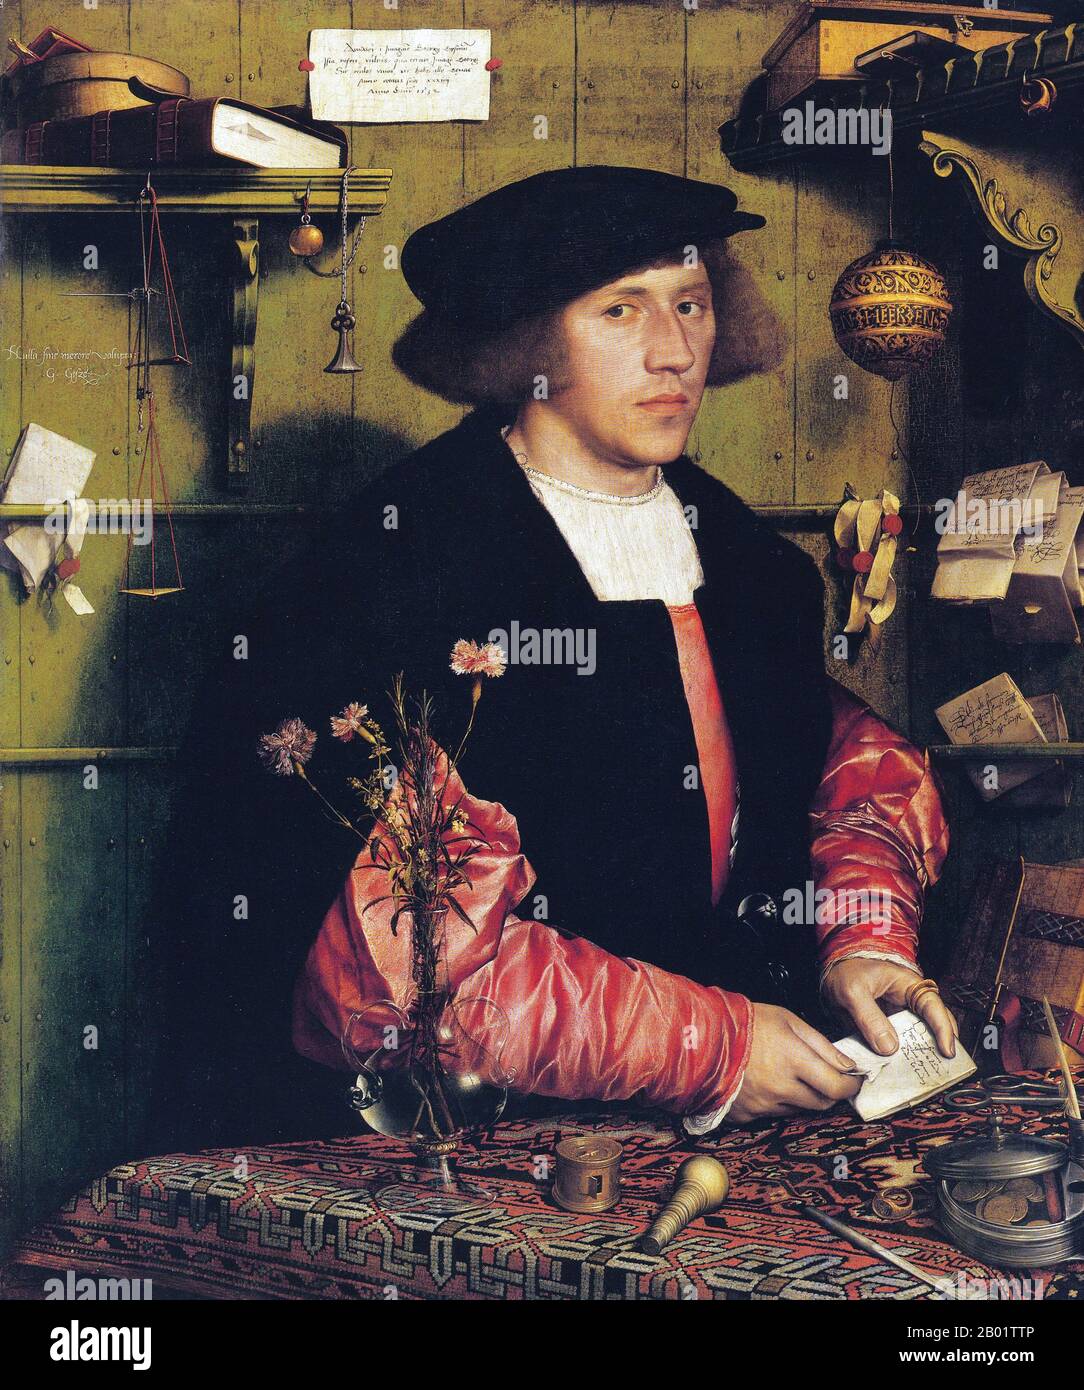 Germania: "Il mercante Georg Gisze". Olio su legno dipinto di Hans Holbein il giovane (1497-1543), c. 1532. Hans Holbein il giovane era un pittore e incisore tedesco-svizzero dello stile rinascimentale settentrionale, visto da molti come uno dei più grandi ritrattisti del XVI secolo. La sua gamma di lavori includeva anche la propaganda della riforma, l'arte religiosa e la satira, e fu un influente contributore alla storia del design del libro. Fu anche pittore del re di Enrico VIII d'Inghilterra, i suoi ritratti della famiglia reale e della nobiltà un'importante testimonianza superstite della corte inglese. Foto Stock